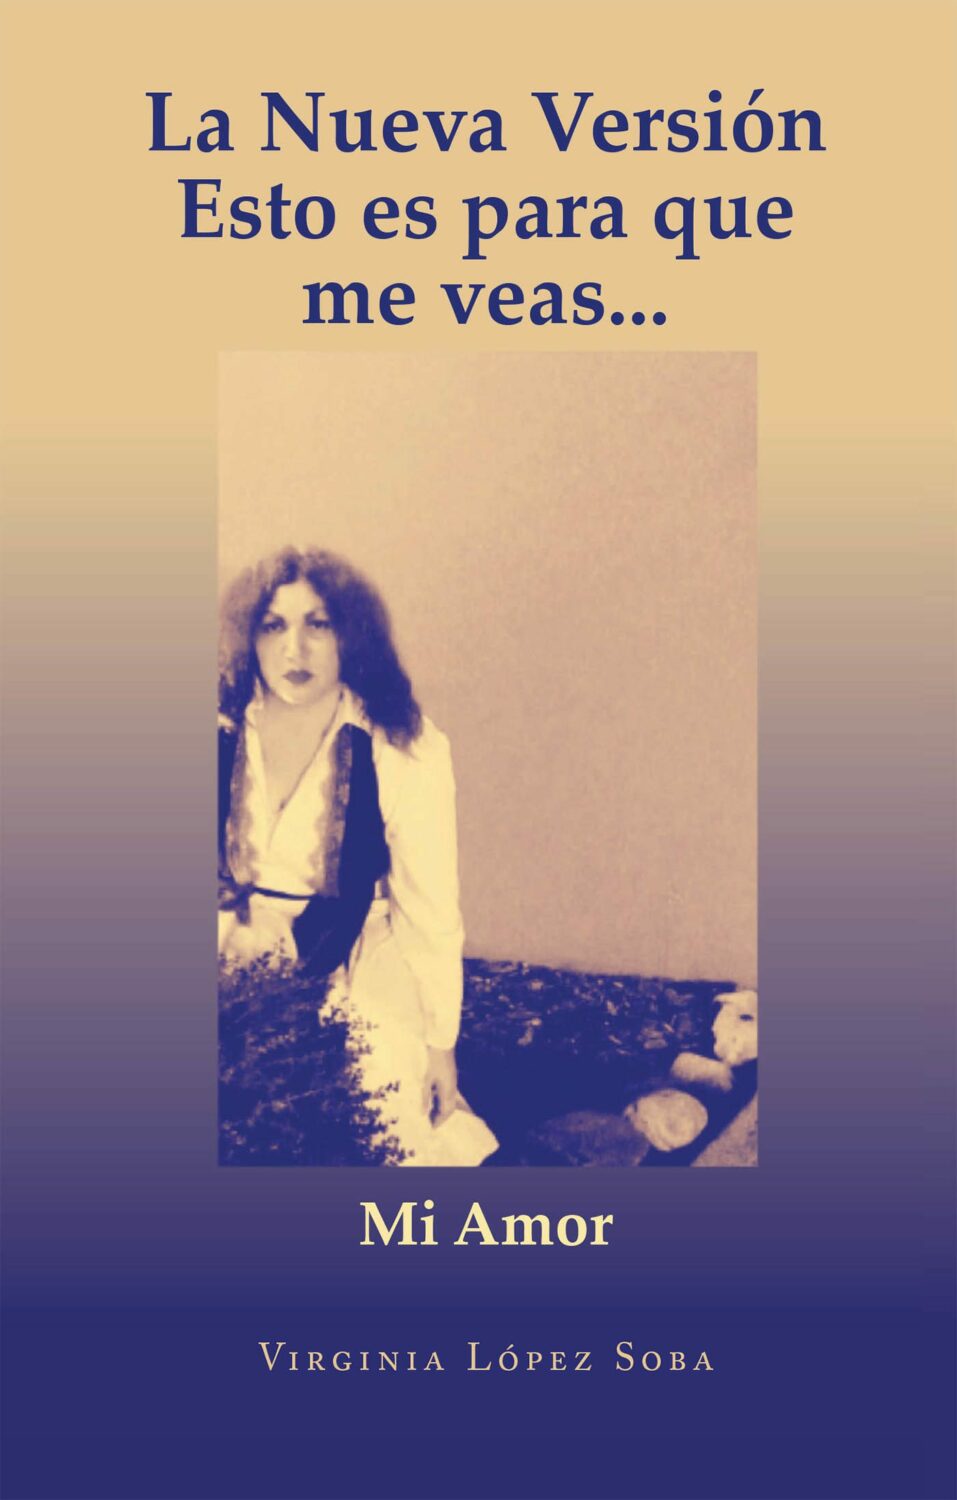 El nuevo libro de Virginia López Soba, La Nueva Versión Esto es para que me veas...: Mi Amor